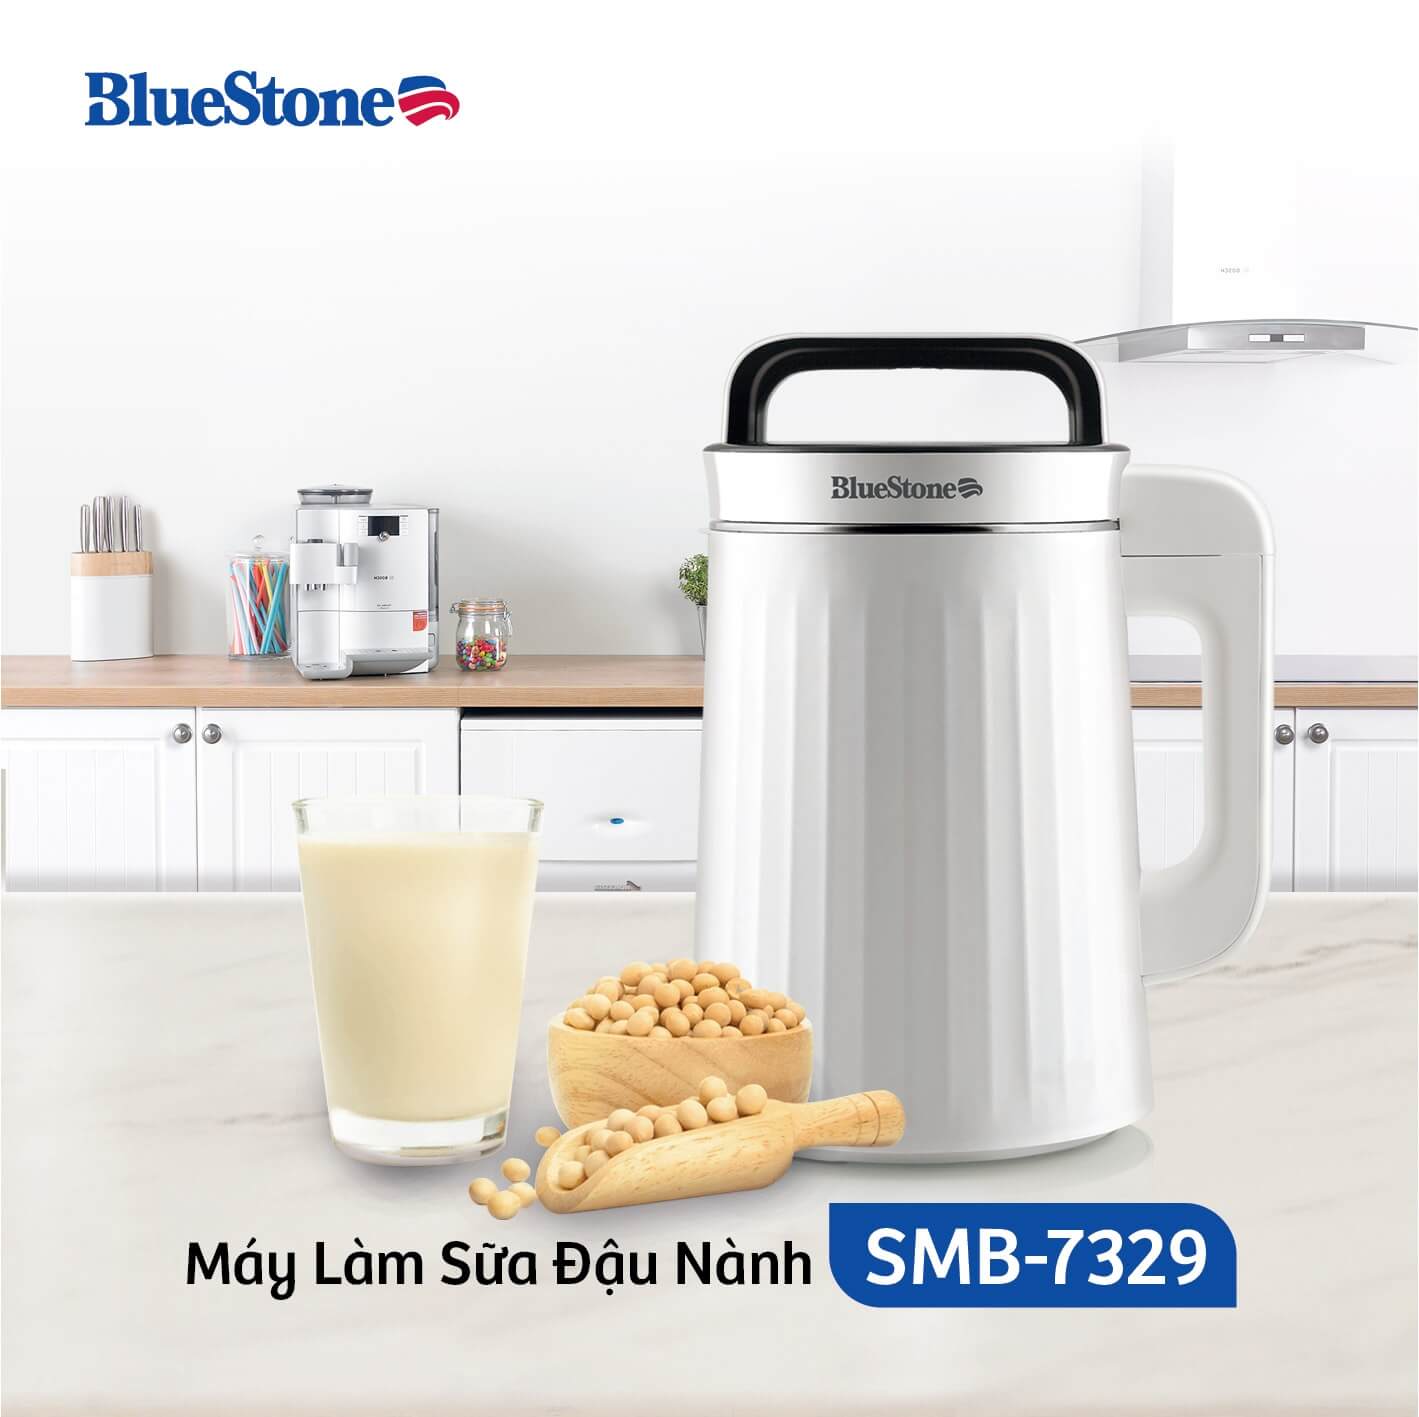 Máy Làm Sữa Đậu Nành Bluestone SMB-7329 (1.3 Lít) 5